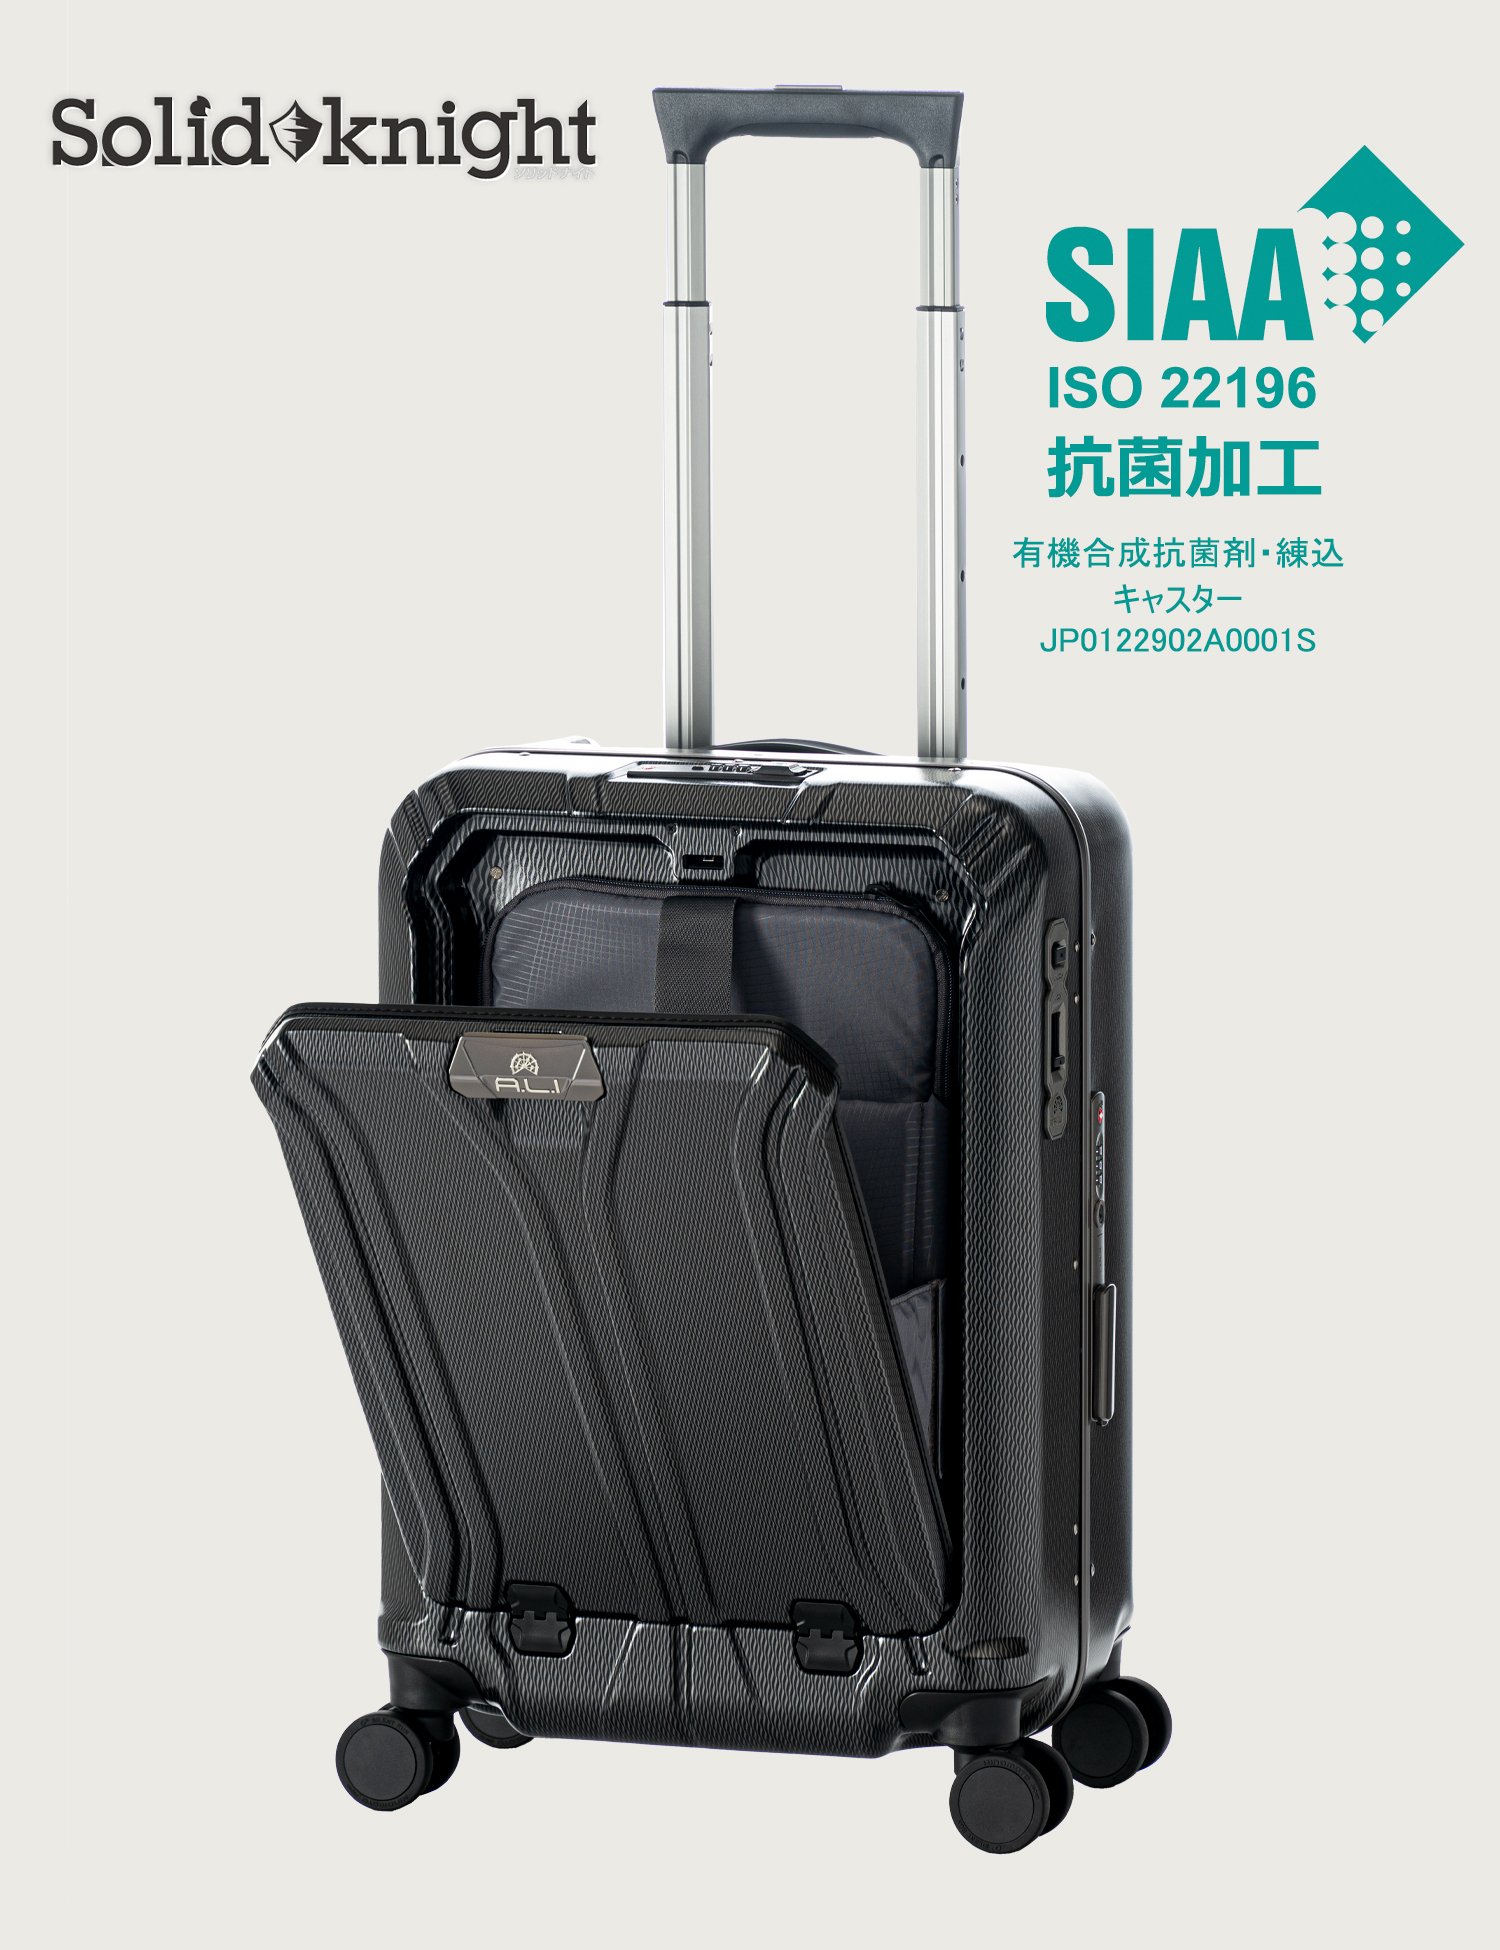 アジア・ラゲージ 公式サイト | Asia Luggage Inc.